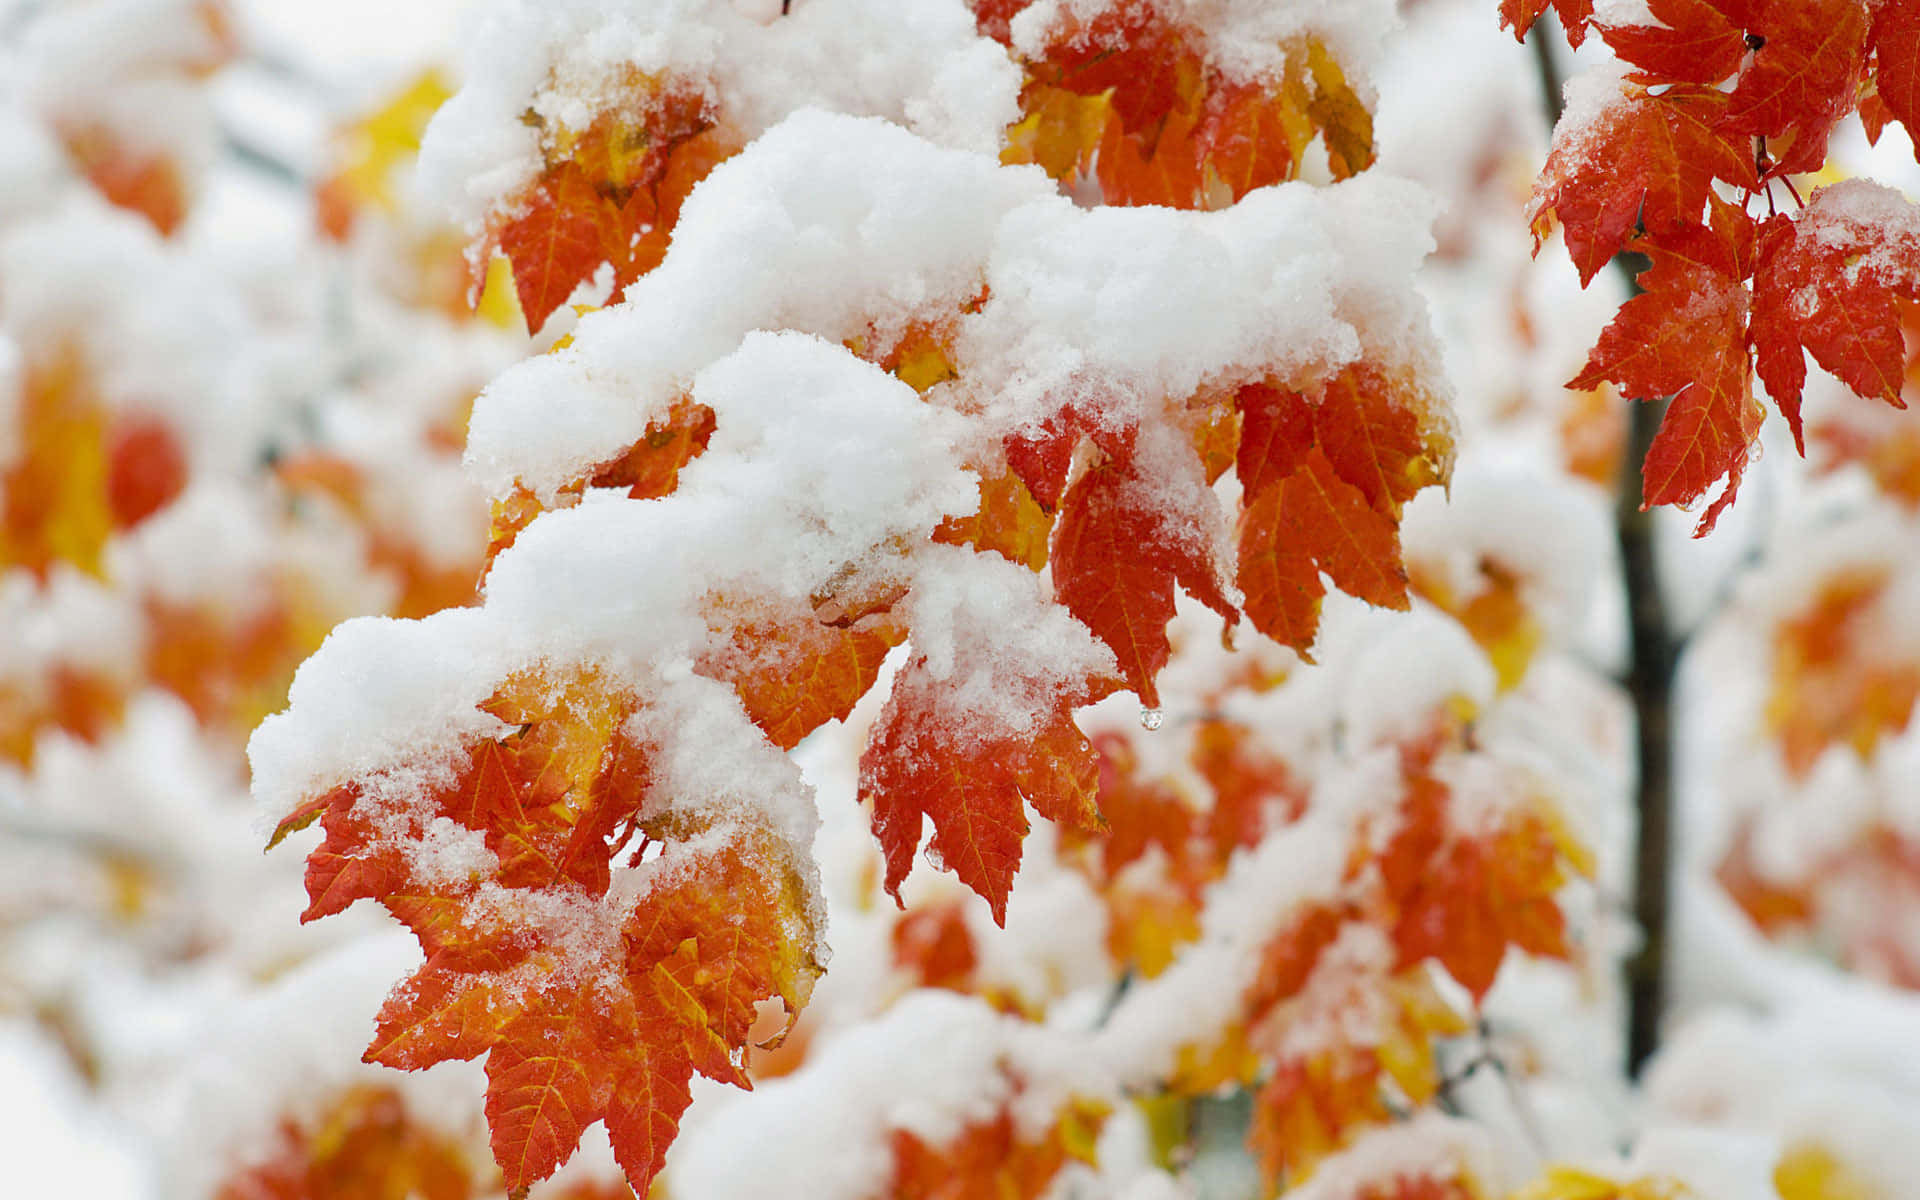 Einast Mit Roten Und Orangefarbenen Blättern, Bedeckt Von Schnee. Wallpaper